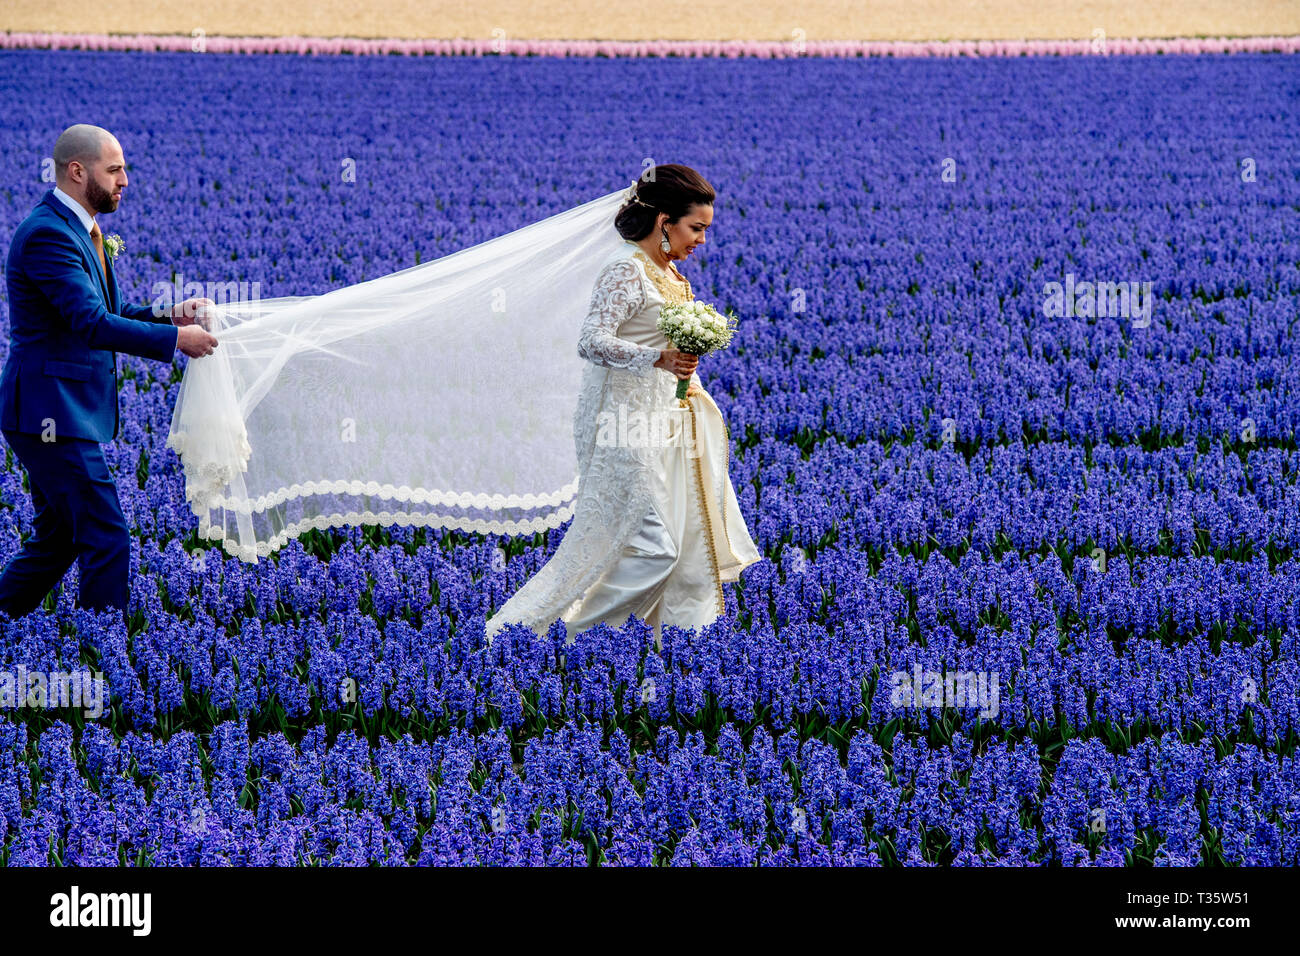 LISSE - een bruidspaar trouwen tulpenvelden staan in de bloei tulp tulpen , roos , rozen , bollenvelden staan in de bloei tijdens de bloembollen lente Foto Stock